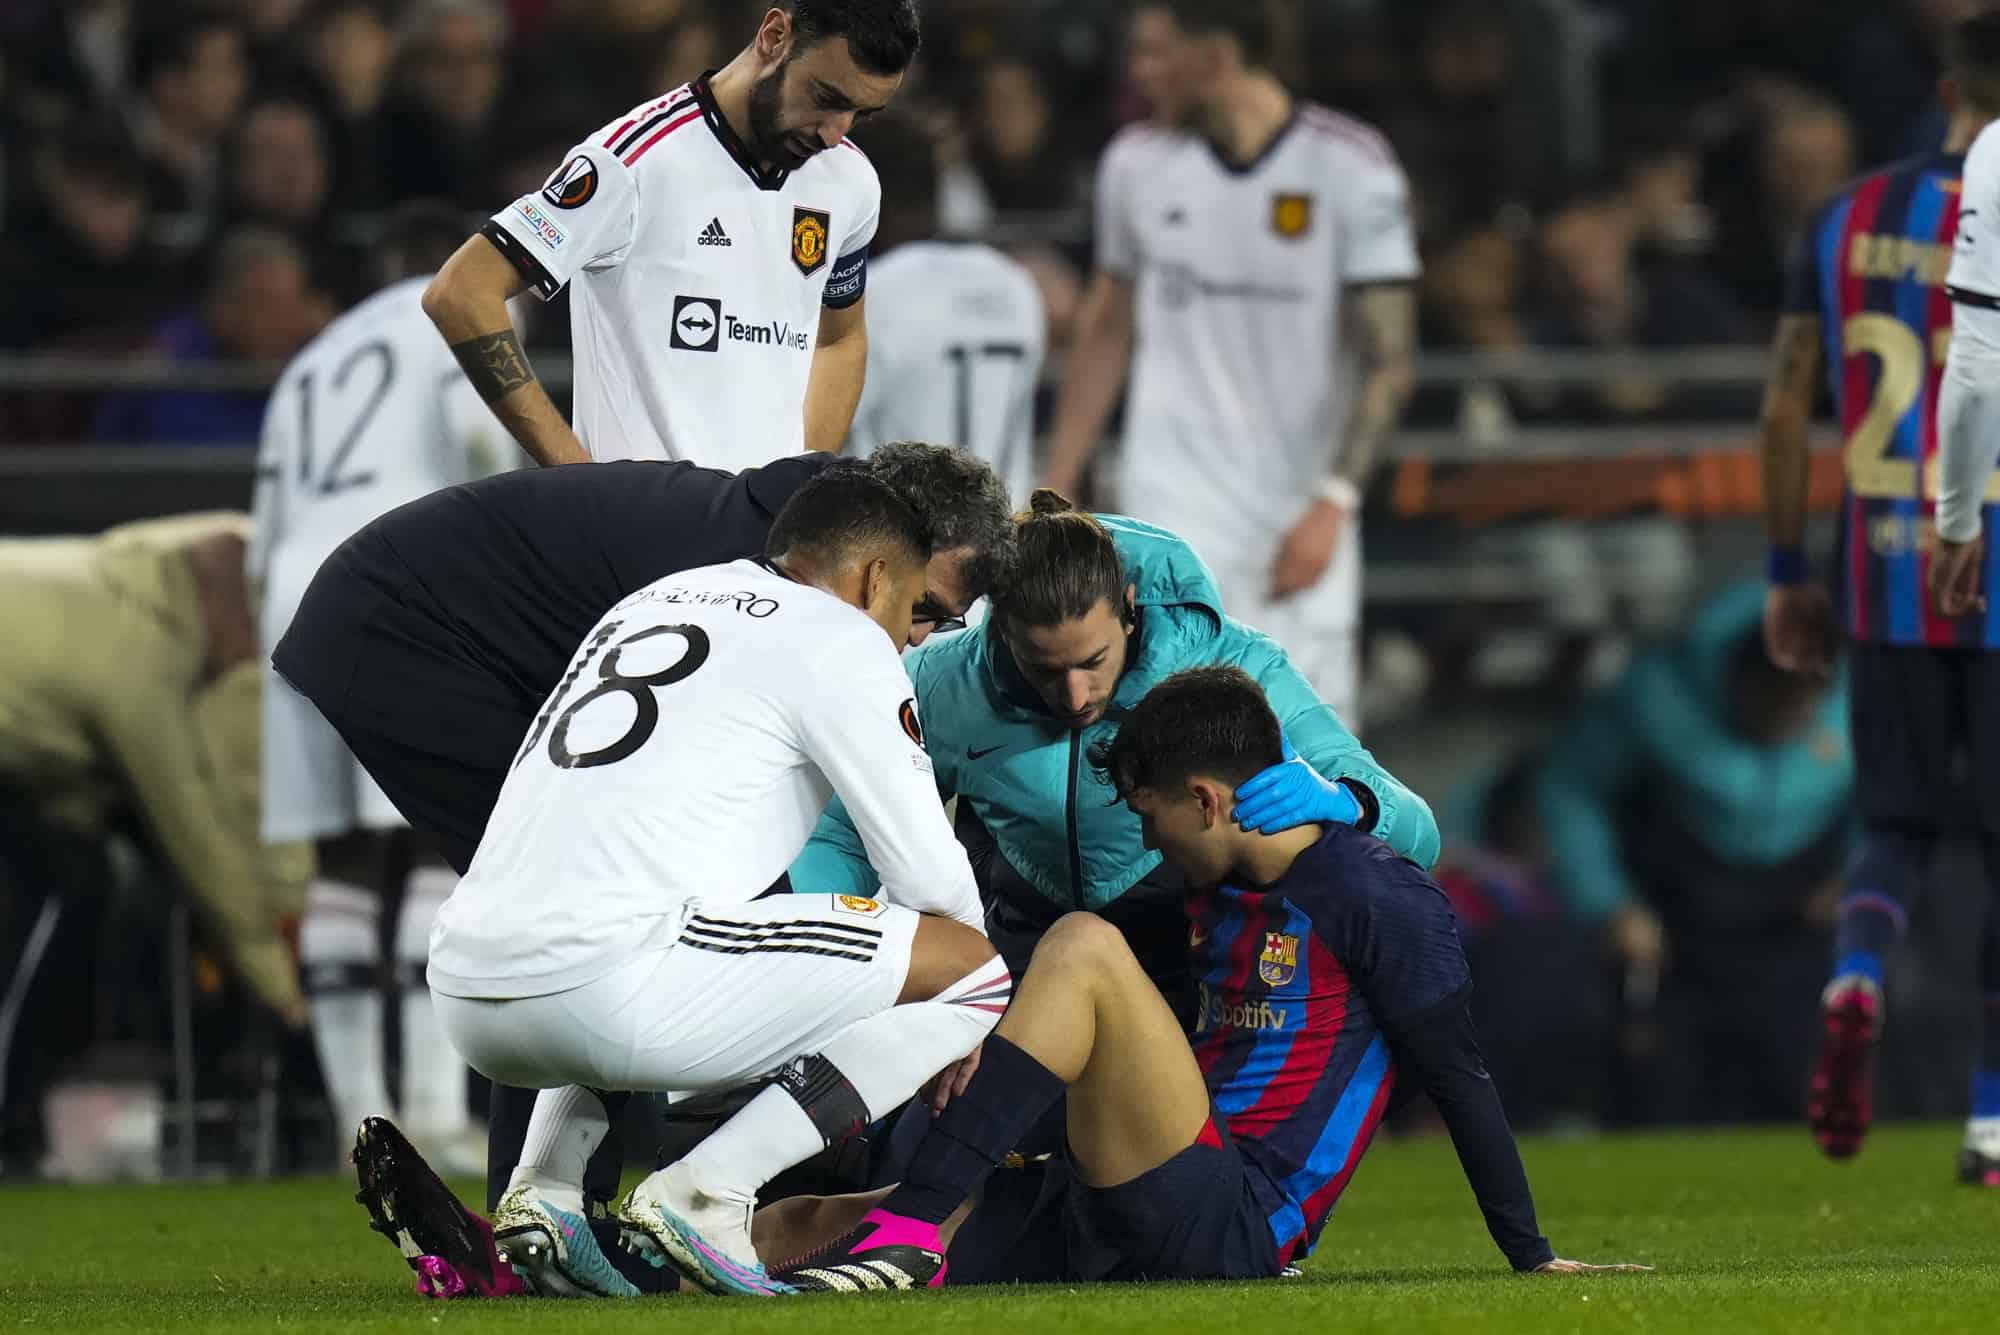 Trụ cột Barca vắng mặt trong trận đấu vì vấn đề sức khỏe tim mạch